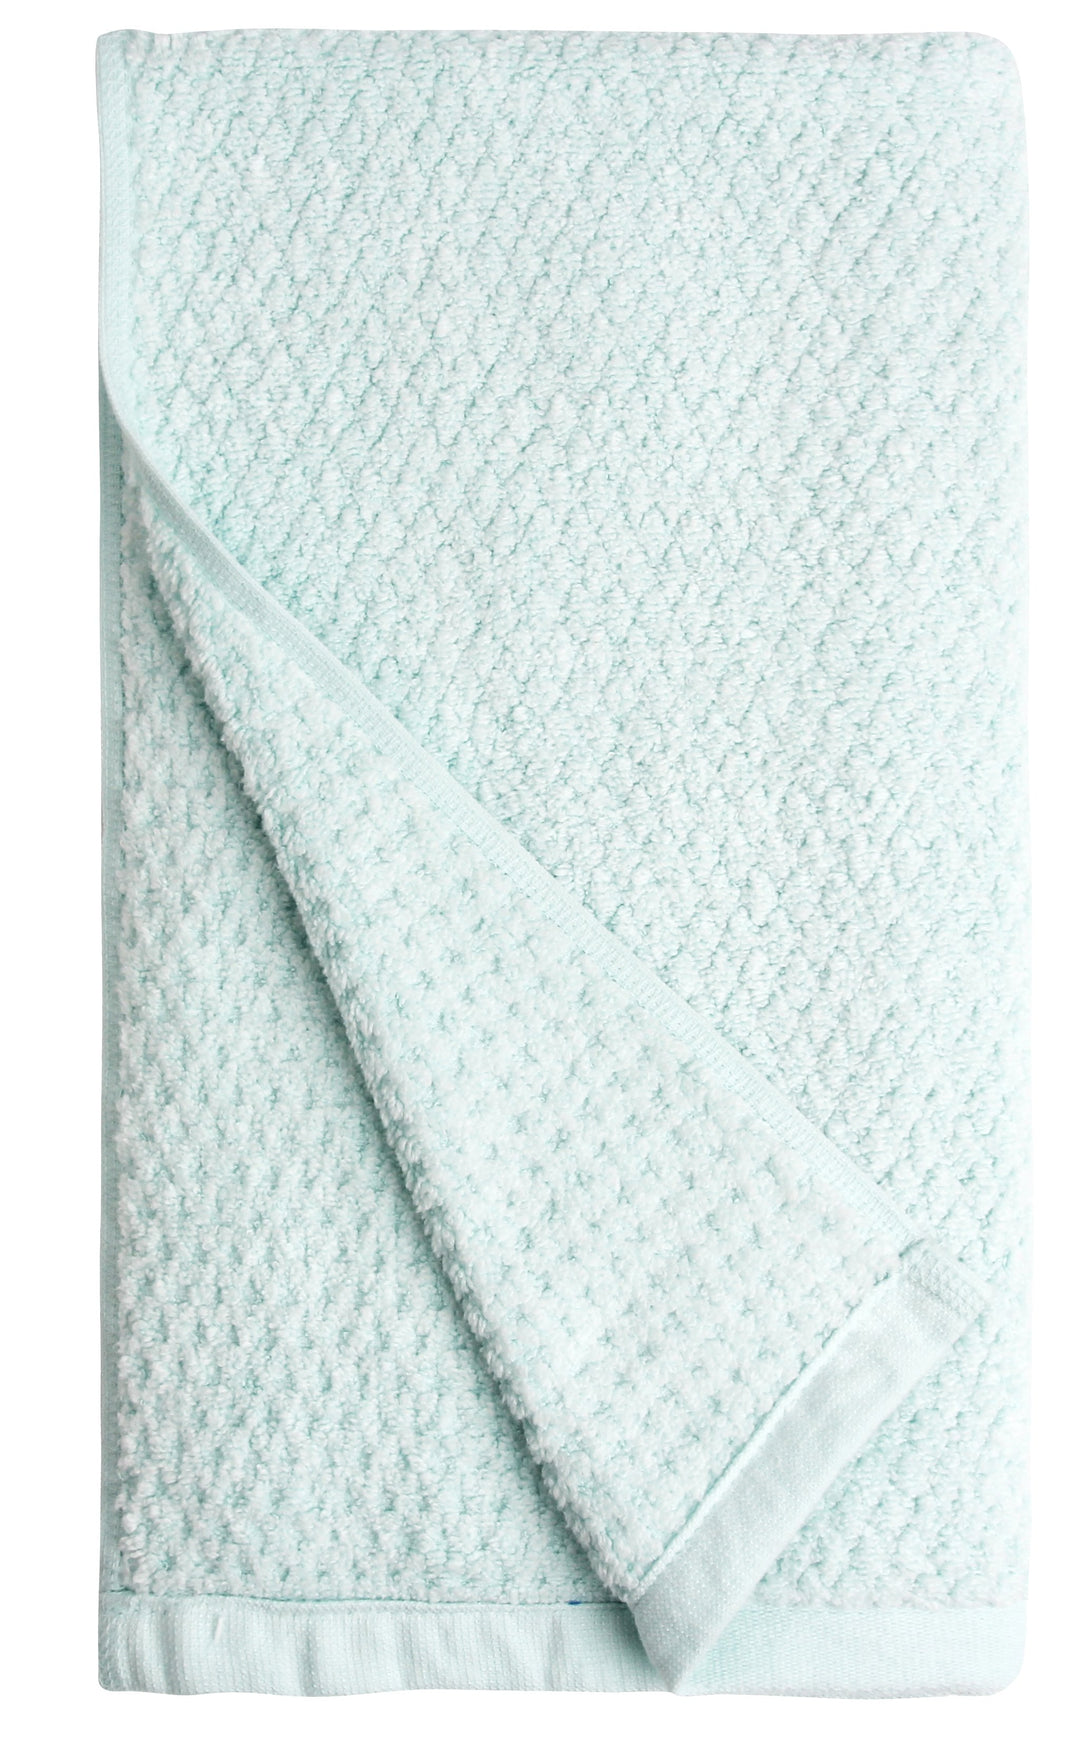 Fleece Handkerchief, Fleece Hand Towel